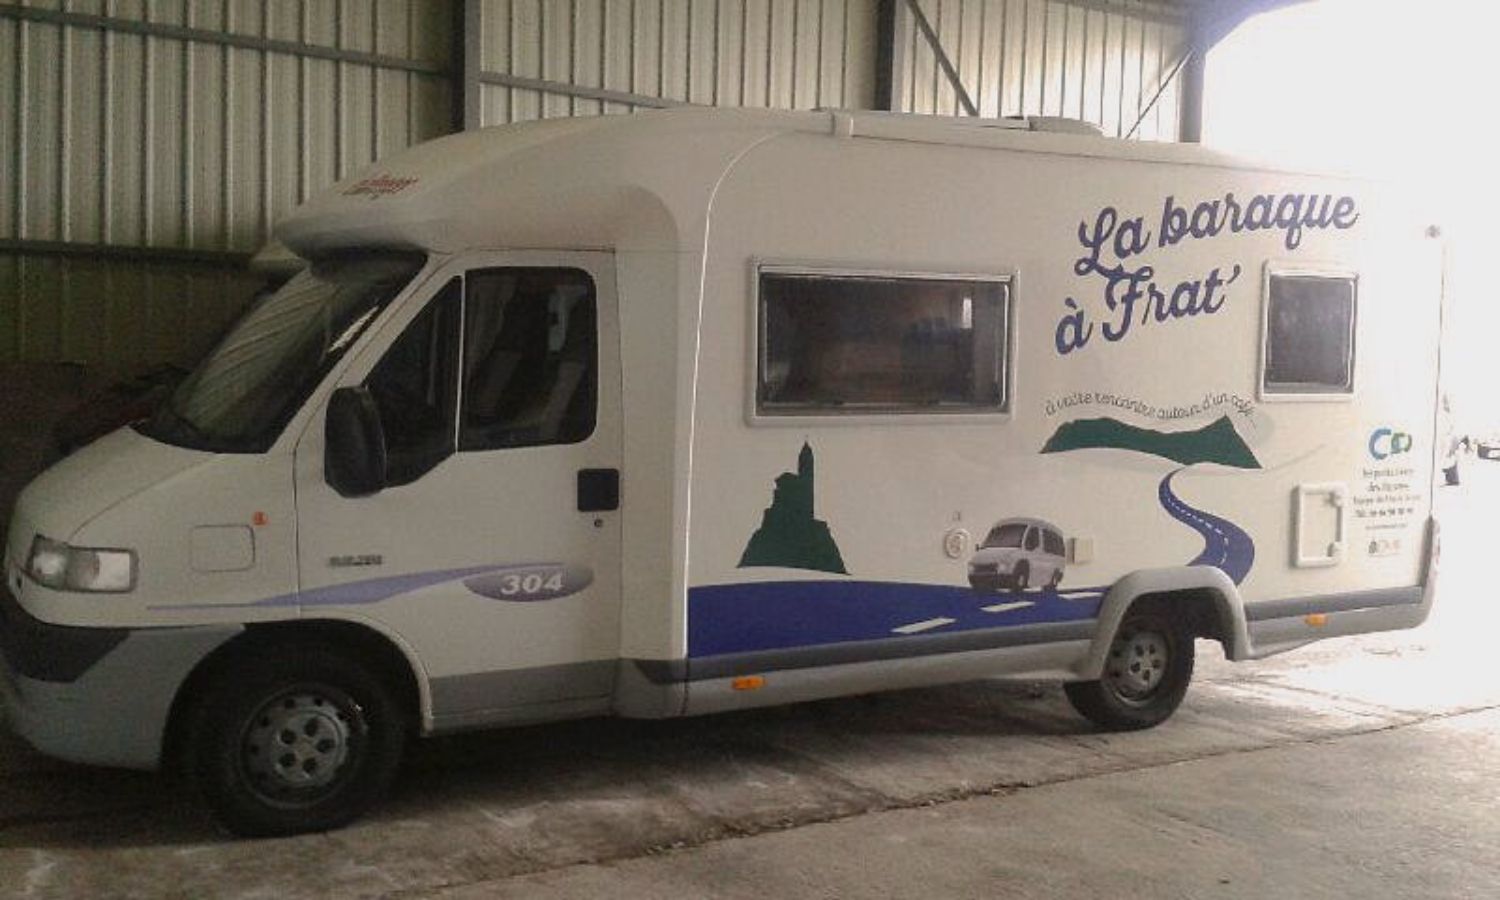 La Baraque à Frat, una camioneta que lucha contra el aislamiento de las personas mayores en Francia